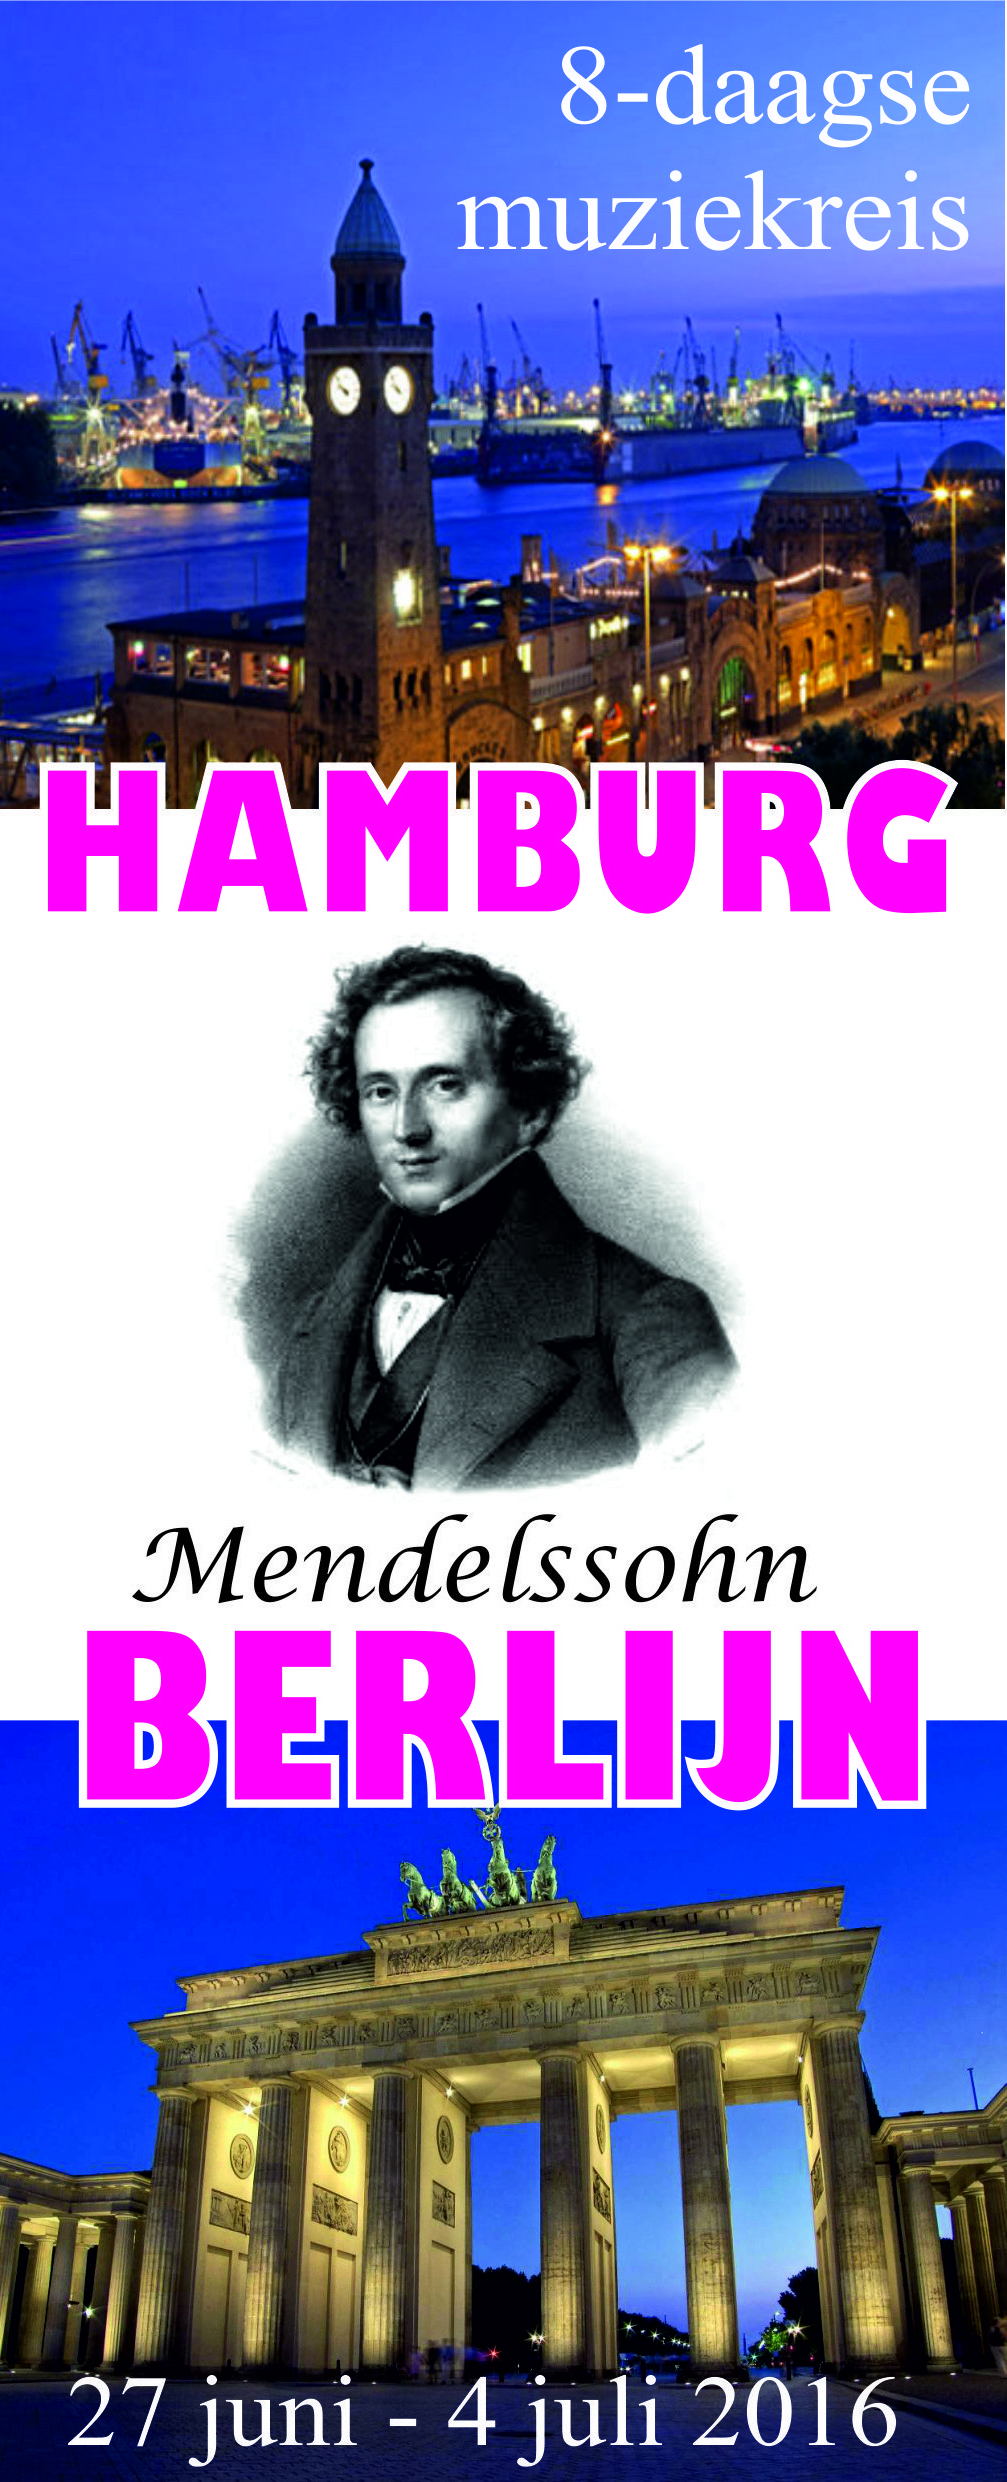 Mendelssohn definitief _cr -cr